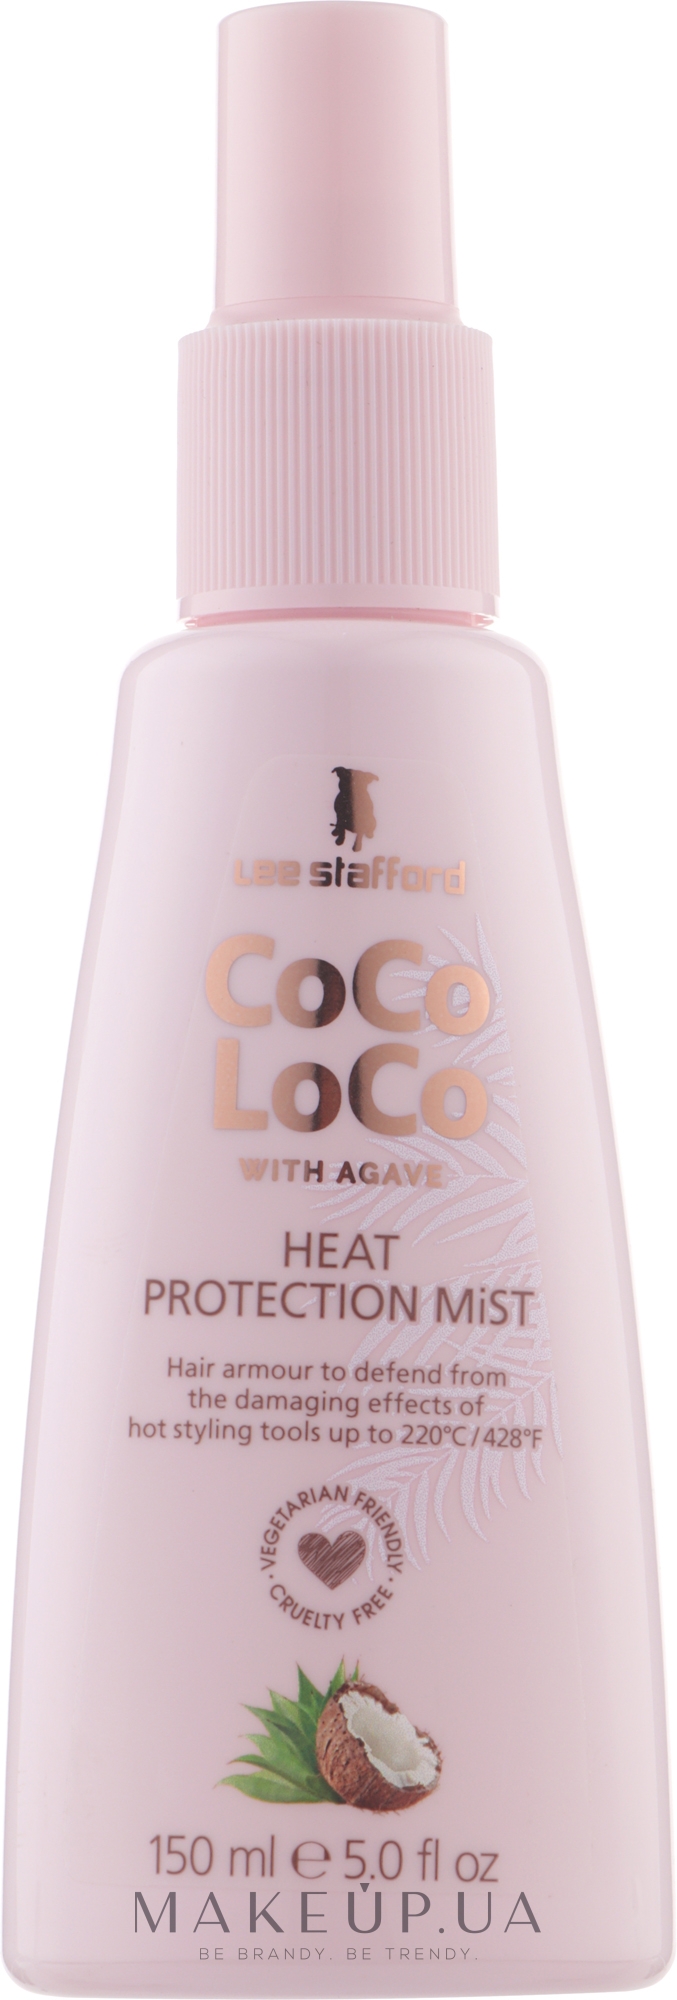 Защитный спрей для волос - Lee Stafford Coco Loco With Agave Heat Protection Mist — фото 150ml